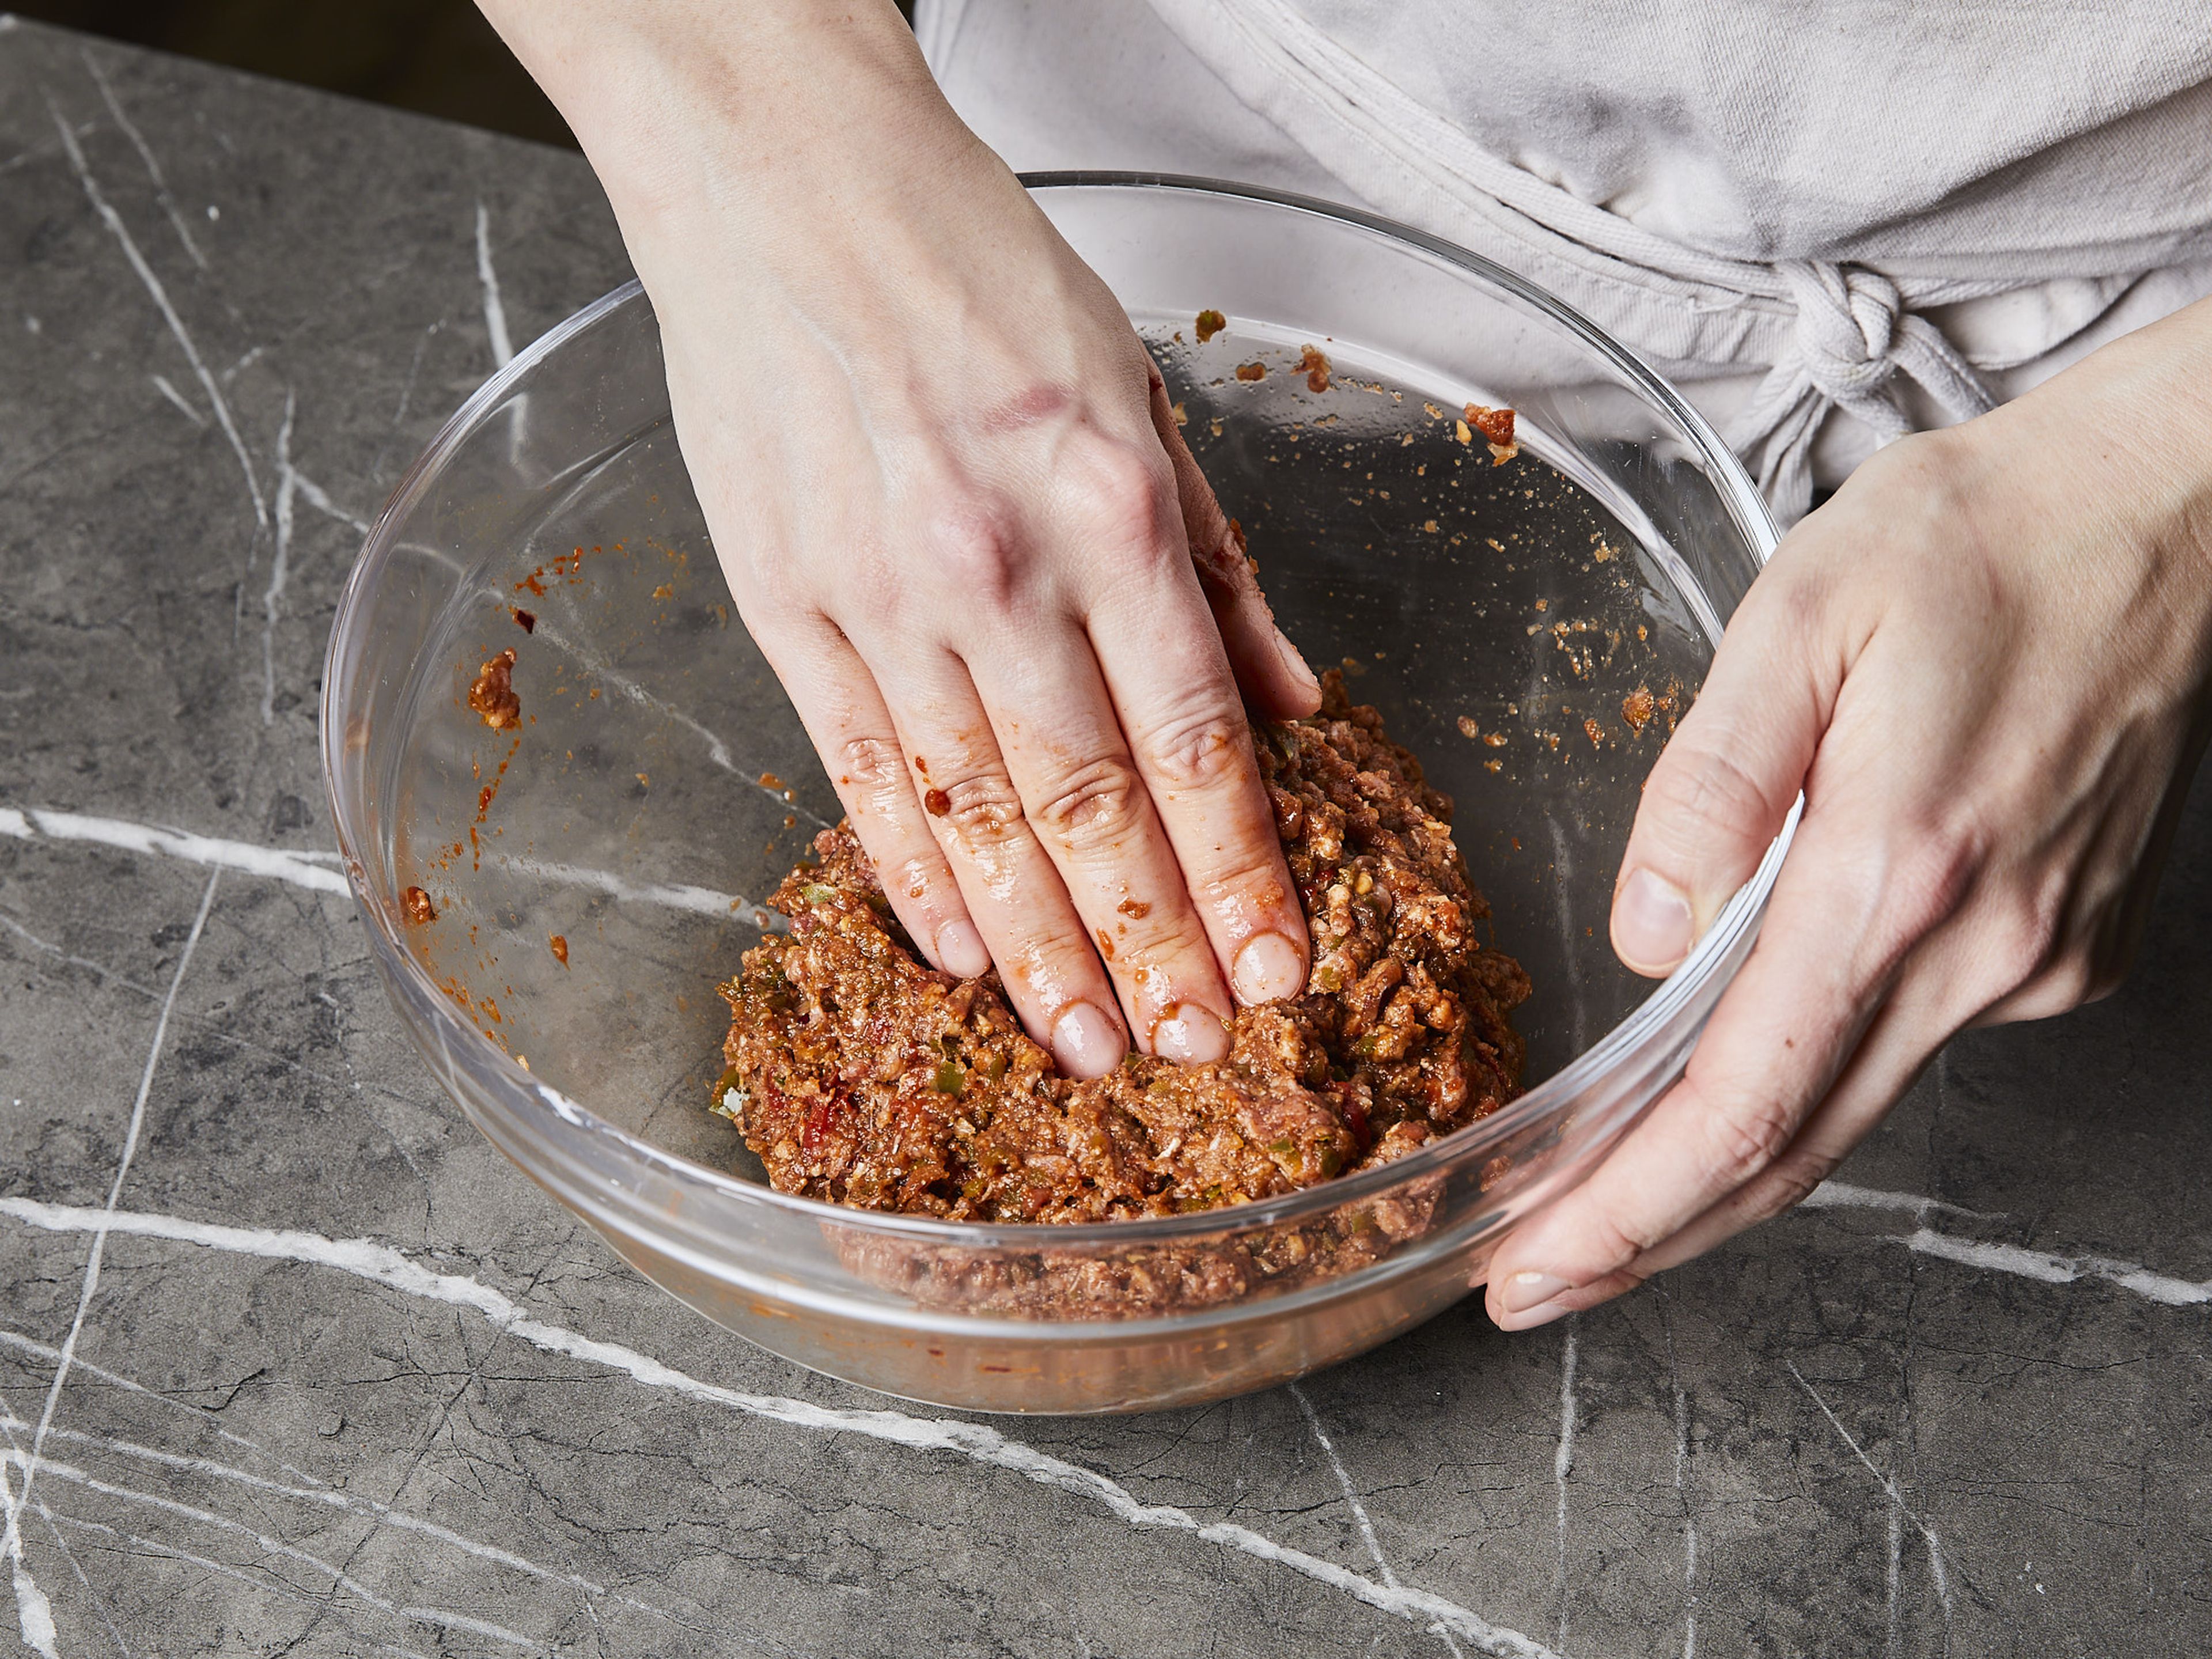 Für die Lahmacun Füllung Zwiebeln schälen und ⅓ der Zwiebeln vierteln. Den Knoblauch schälen. Paprika entkernen und grob würfeln. Die Tomaten vierteln. Dann die Zwiebelviertel, Paprika und Knoblauch fein hacken und mit Biber Salçası, Tomatenmark, gemahlenem Kreuzkümmel, Sumach sowie etwas Salz und Pfeffer vermischen. Alternativ kann dafür auch ein Zerkleinerer verwendet werden. Die Mischung mit dem Rinderhackfleisch, Salz und Pfeffer in eine Schüssel geben und gründlich vermischen.